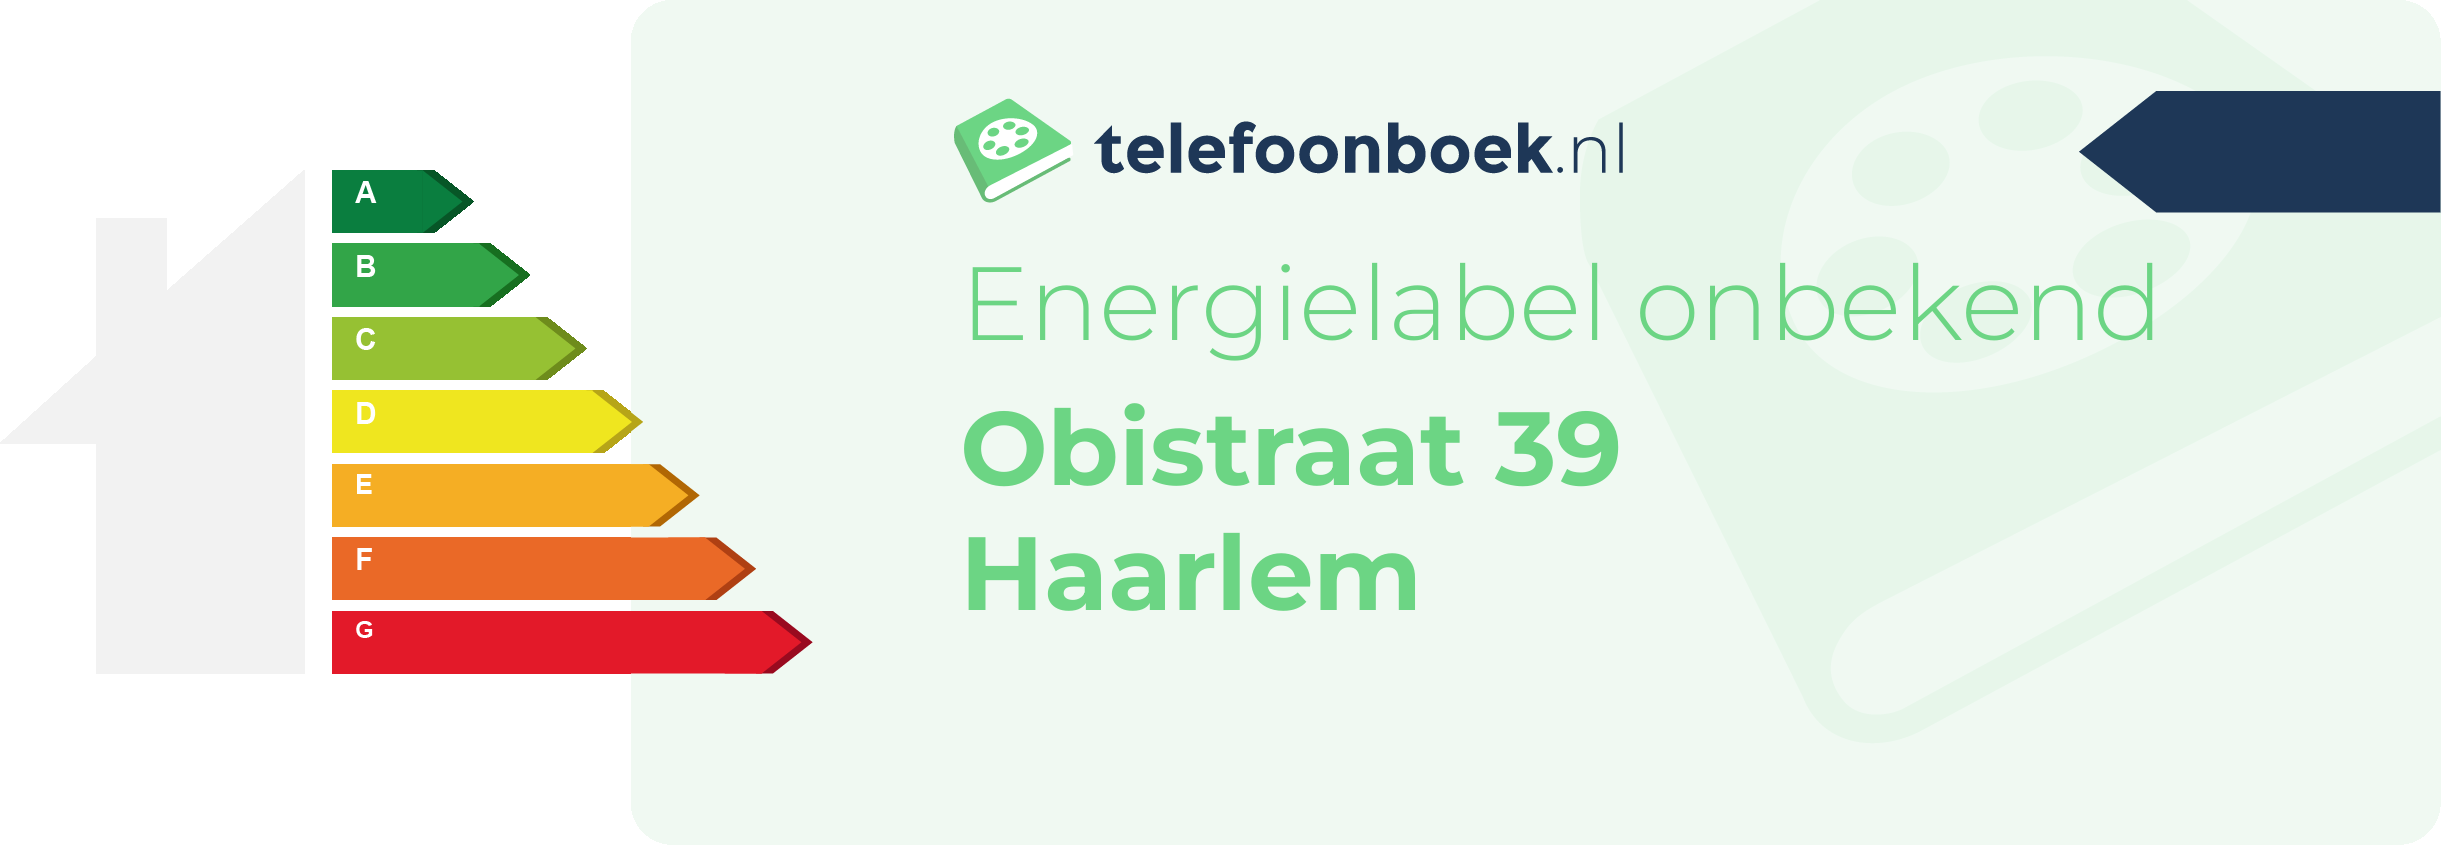 Energielabel Obistraat 39 Haarlem